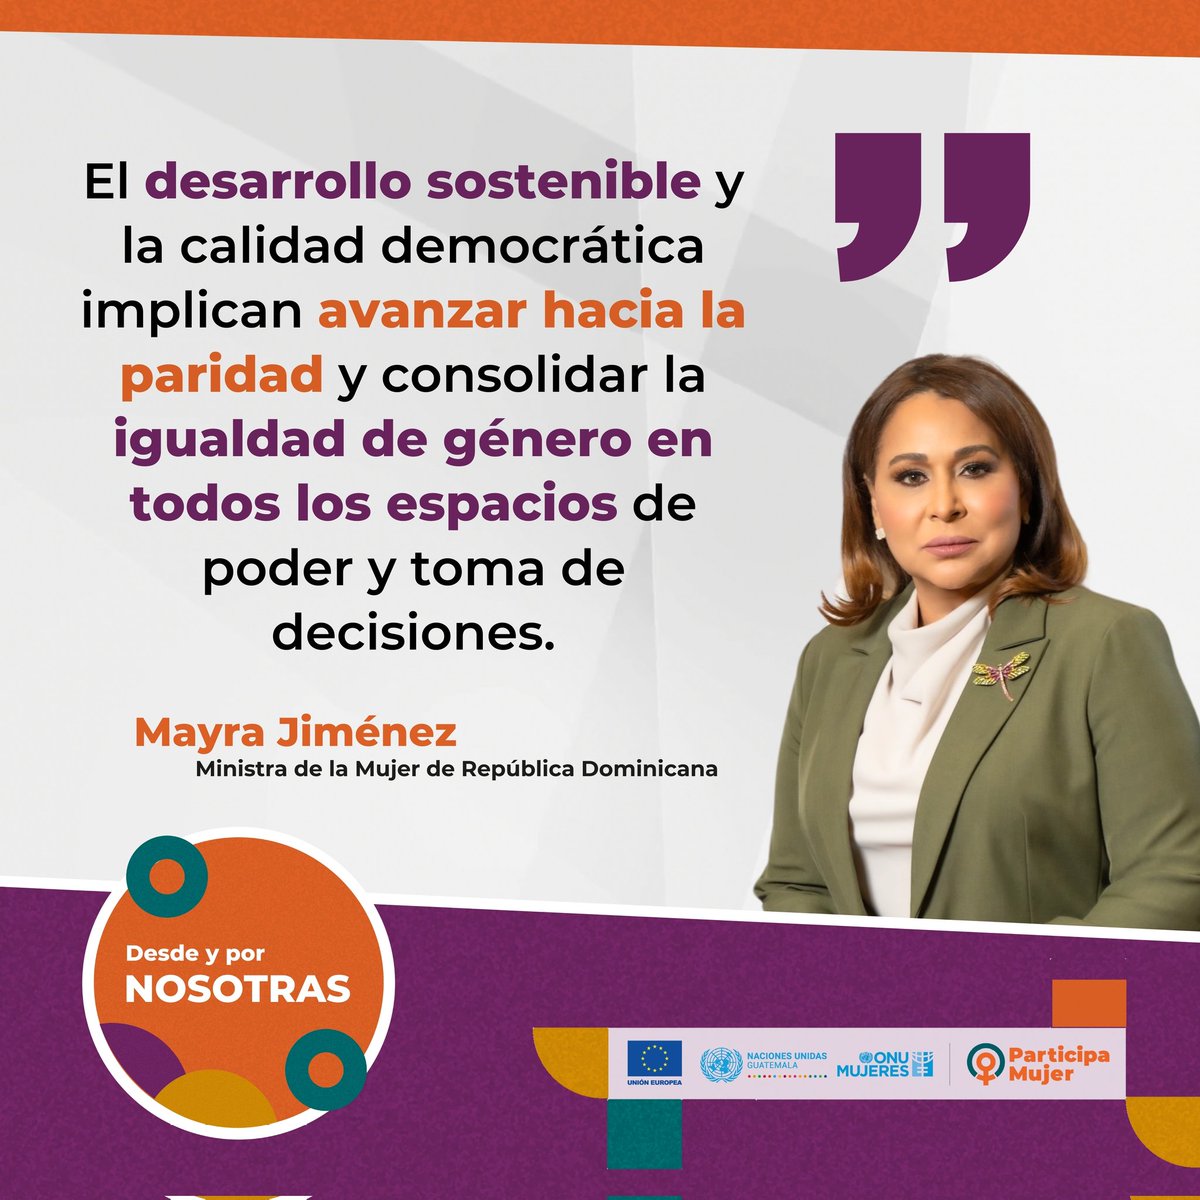 Palabras del Sra. Mayra Jiménez @MayrajimenezTFJ Ministra de la Mujer de la República Dominicana en el Seminario Internacional #DesdeYporNosotras del Proyecto #ParticipaMujer financiado por @UEGuatemala